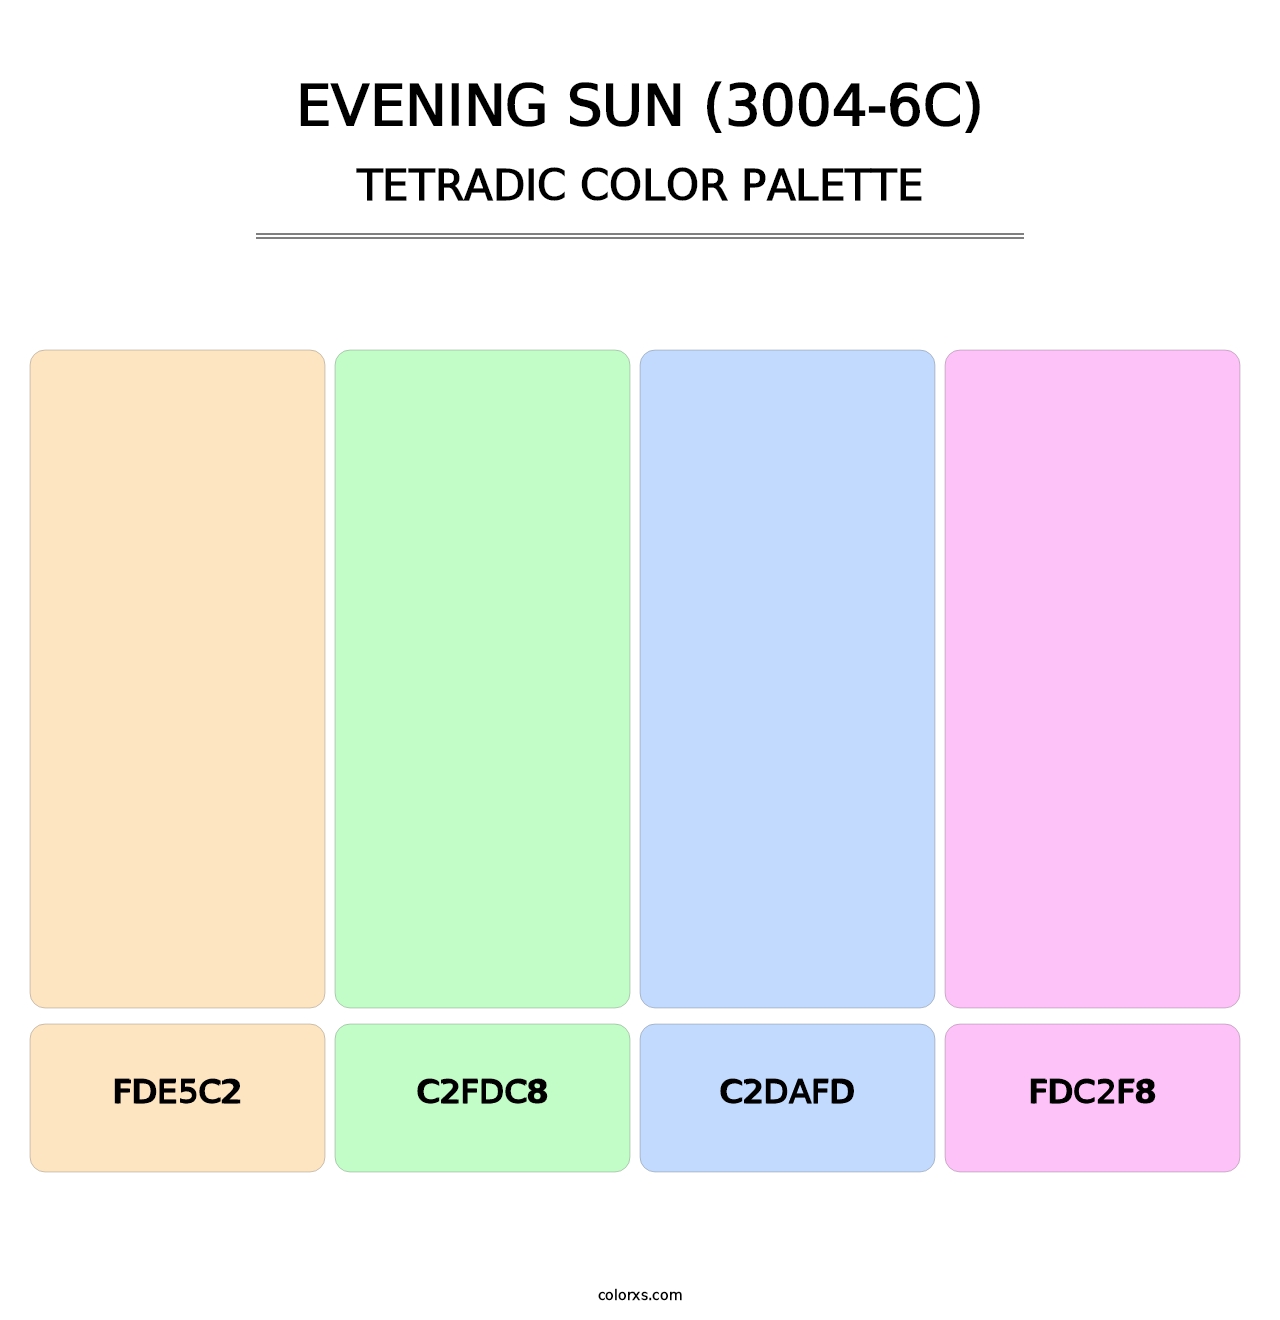 Evening Sun (3004-6C) - Tetradic Color Palette